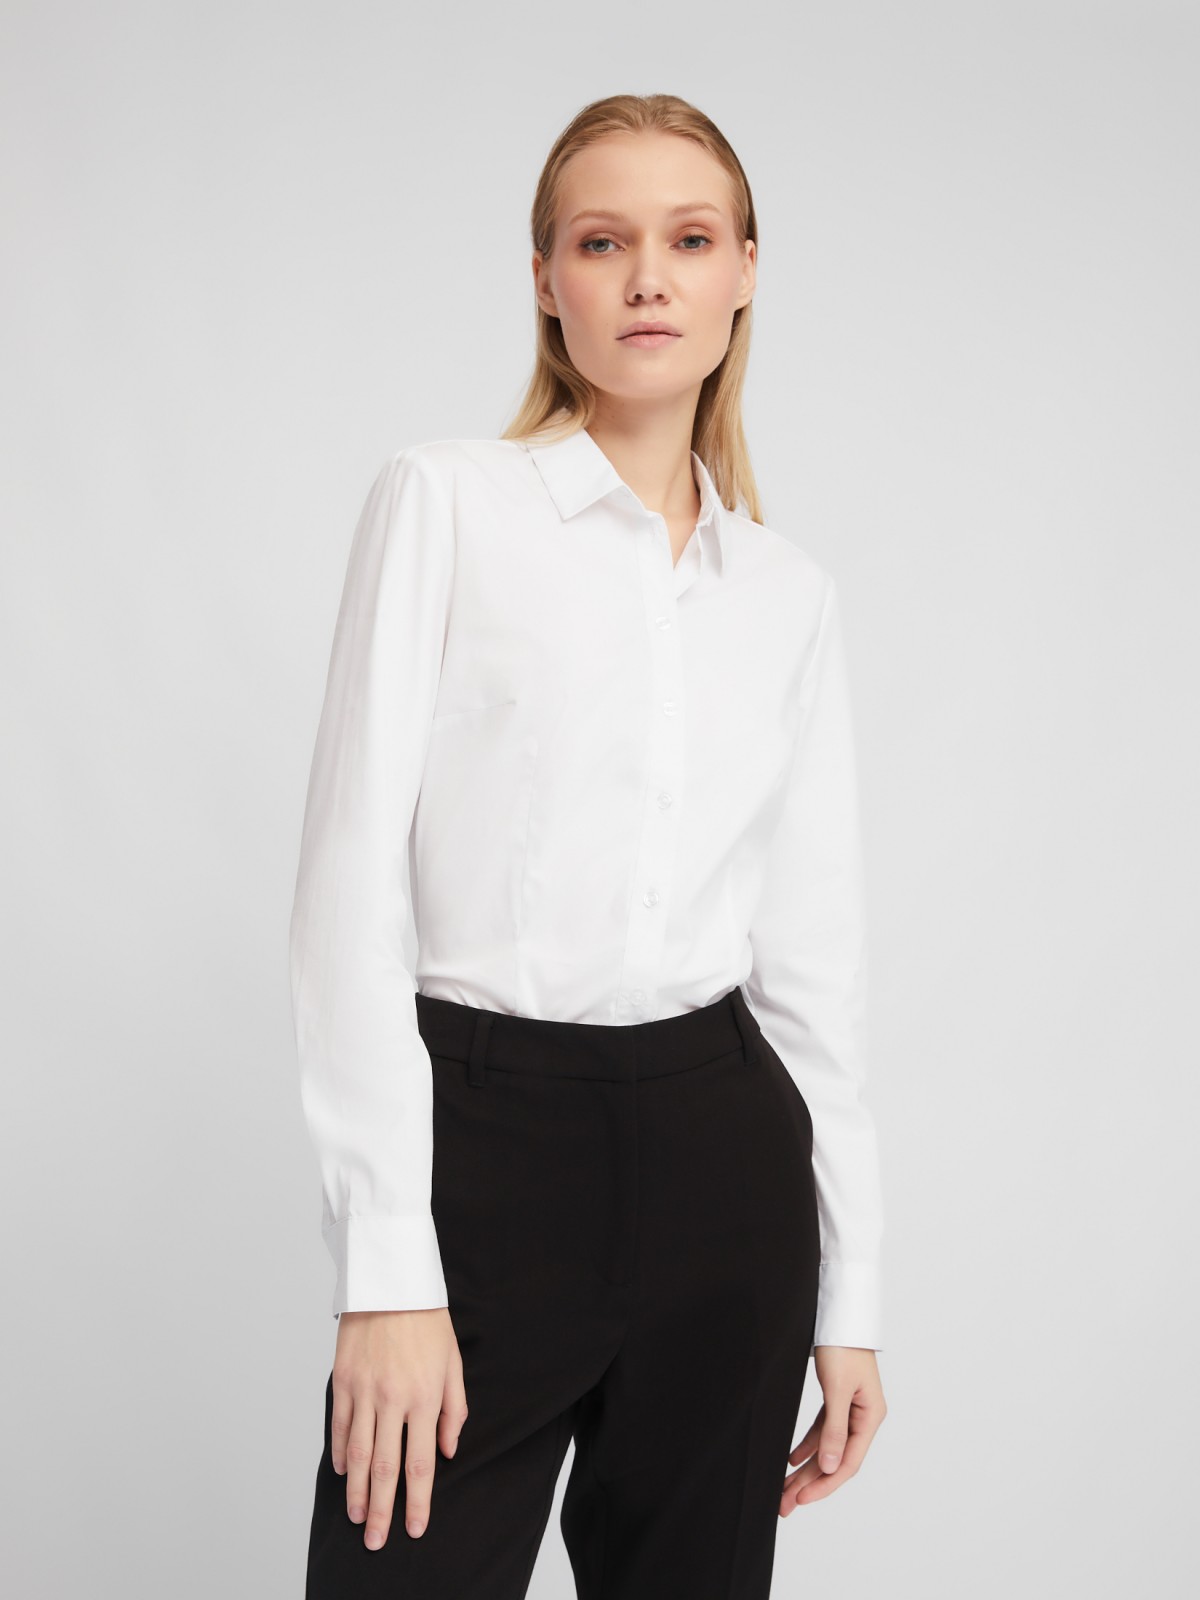 Офисная рубашка-боди прилегающего силуэта с длинным рукавом zolla 024111159472, цвет белый, размер XS - фото 1